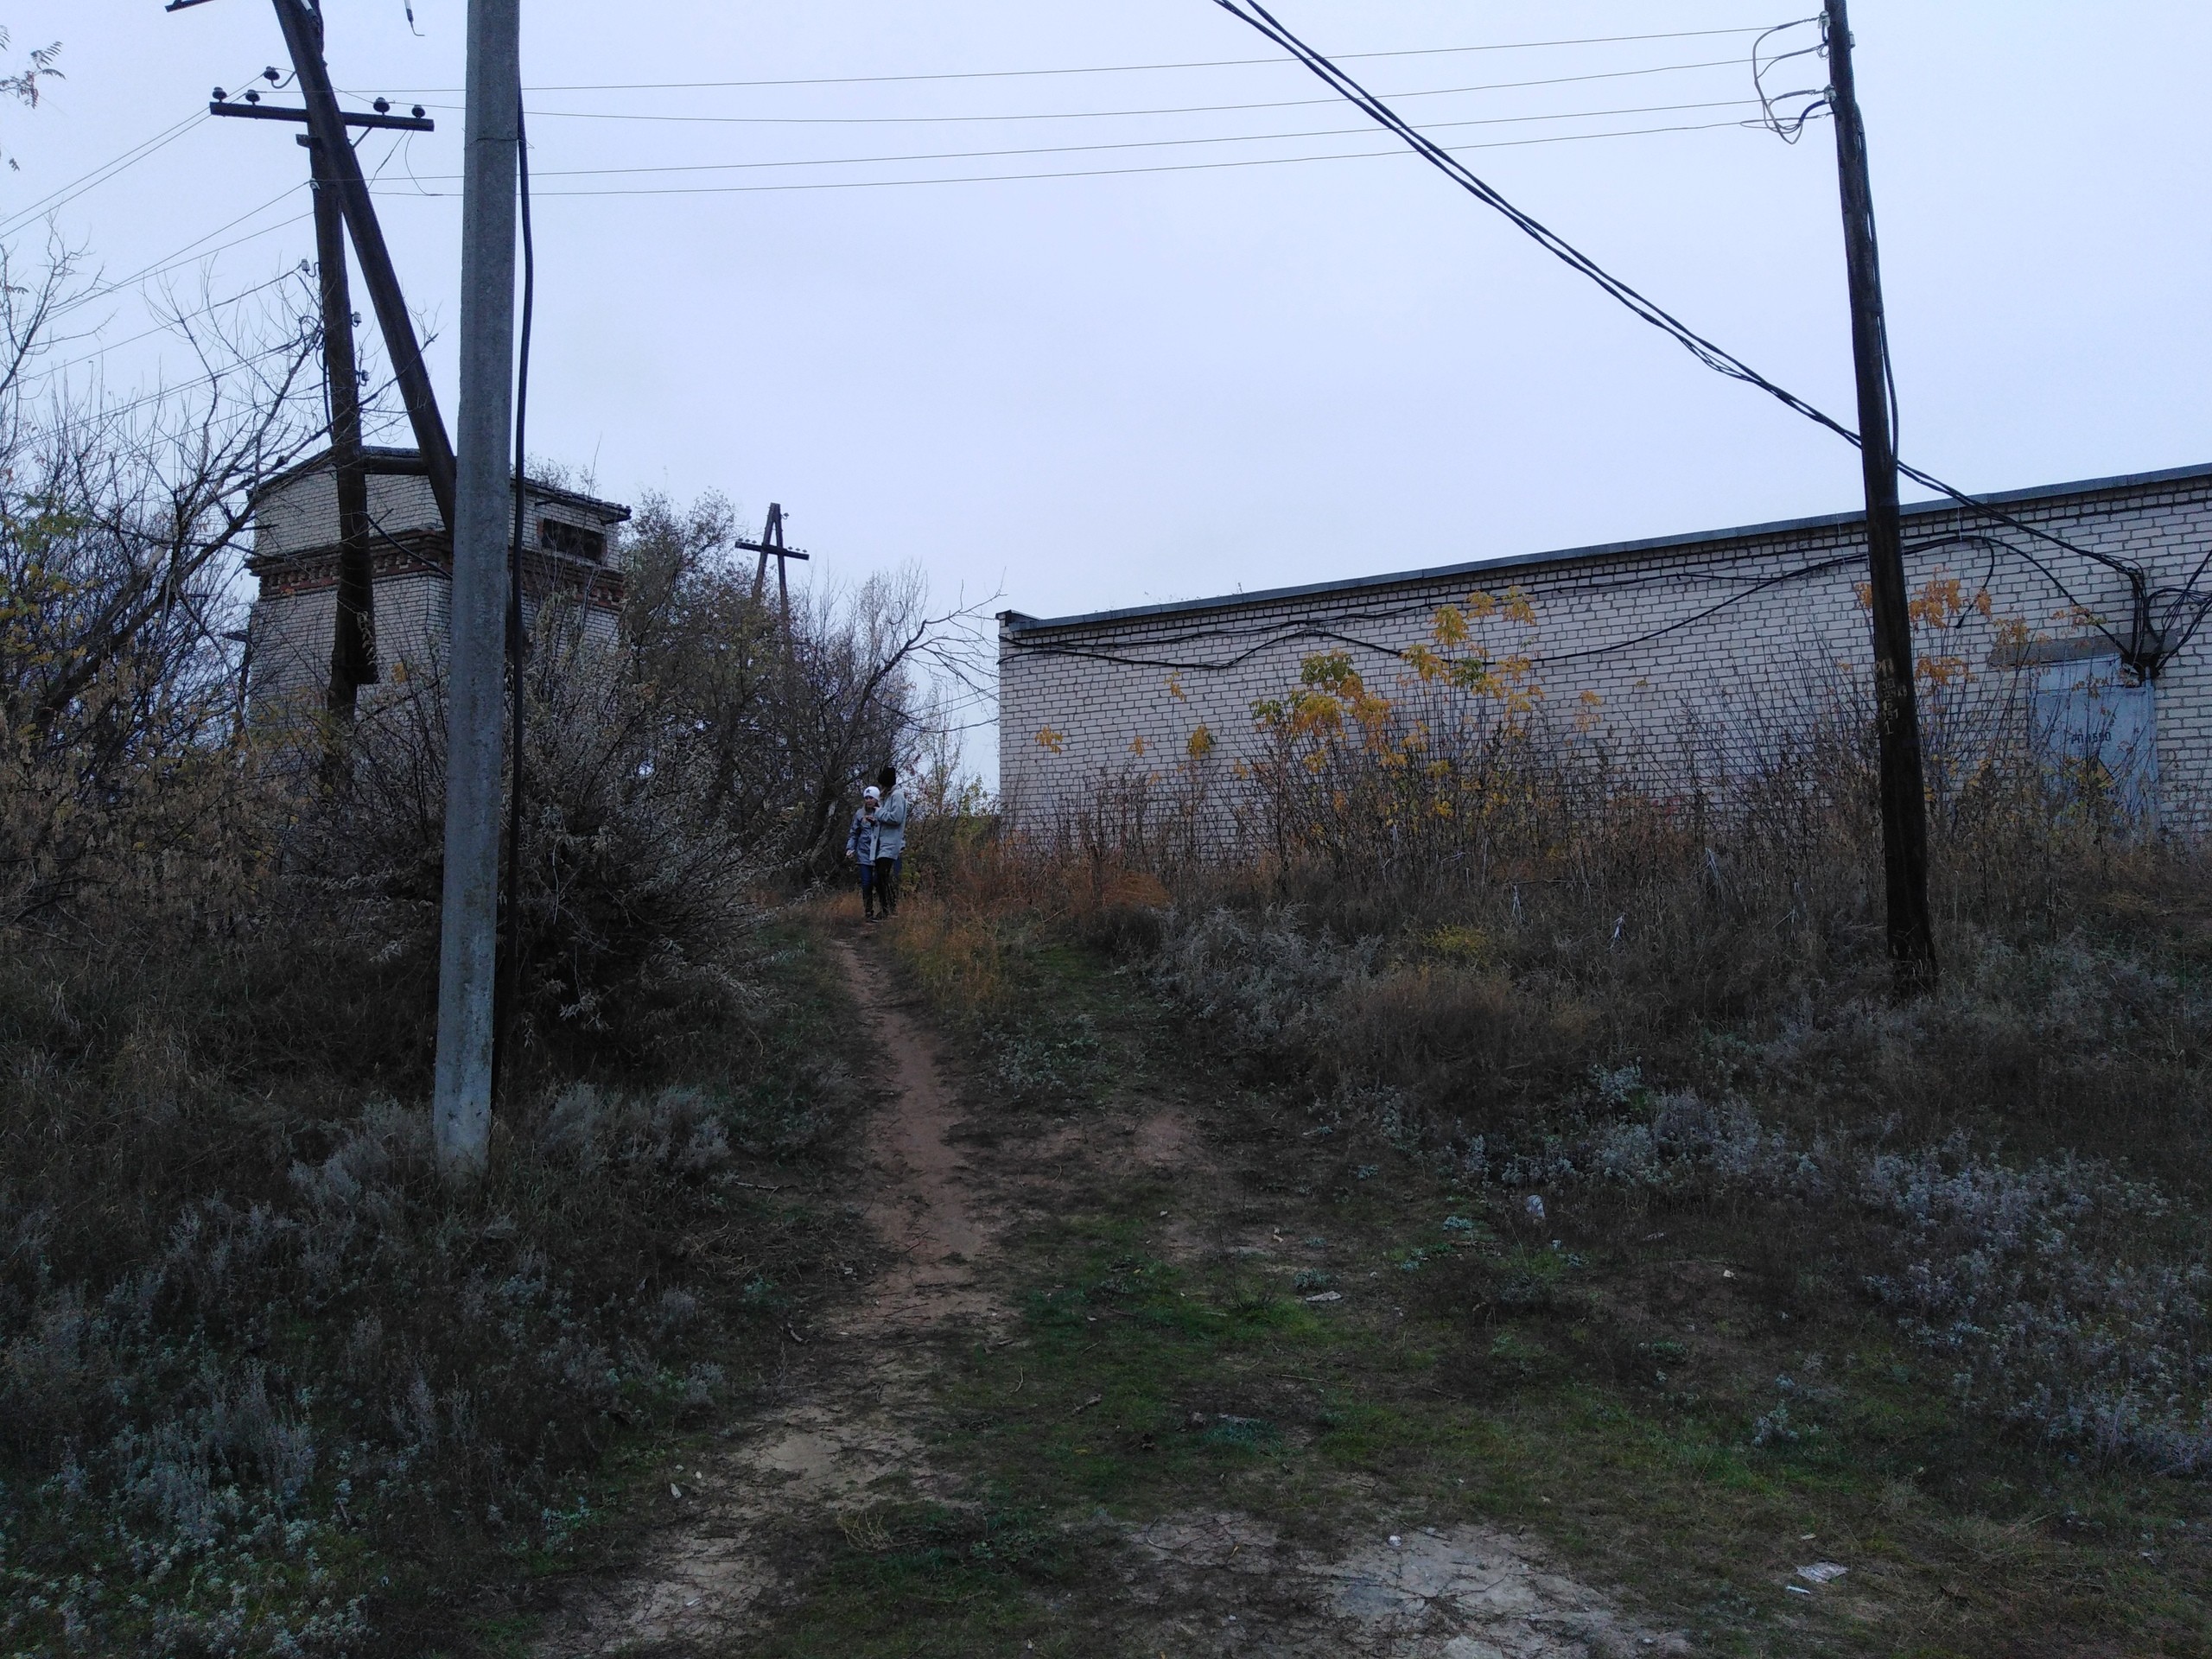 Гаражи, овраги, собаки и камыши: Через что проходят волгоградские дети по дороге в школу